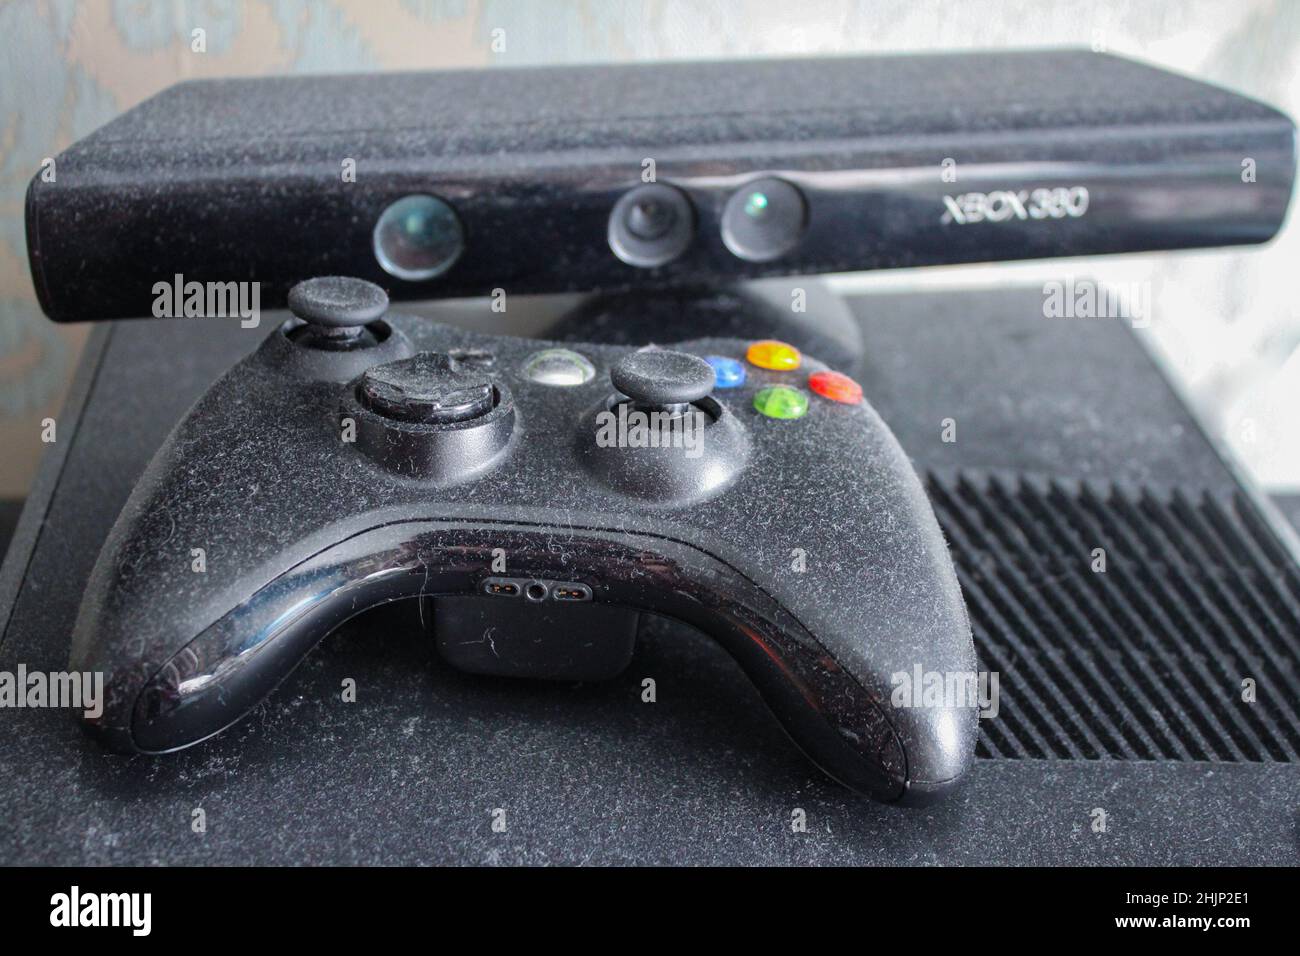 Xbox 360 Microsoft + Kinect + 2Controller + Gioco calcio +